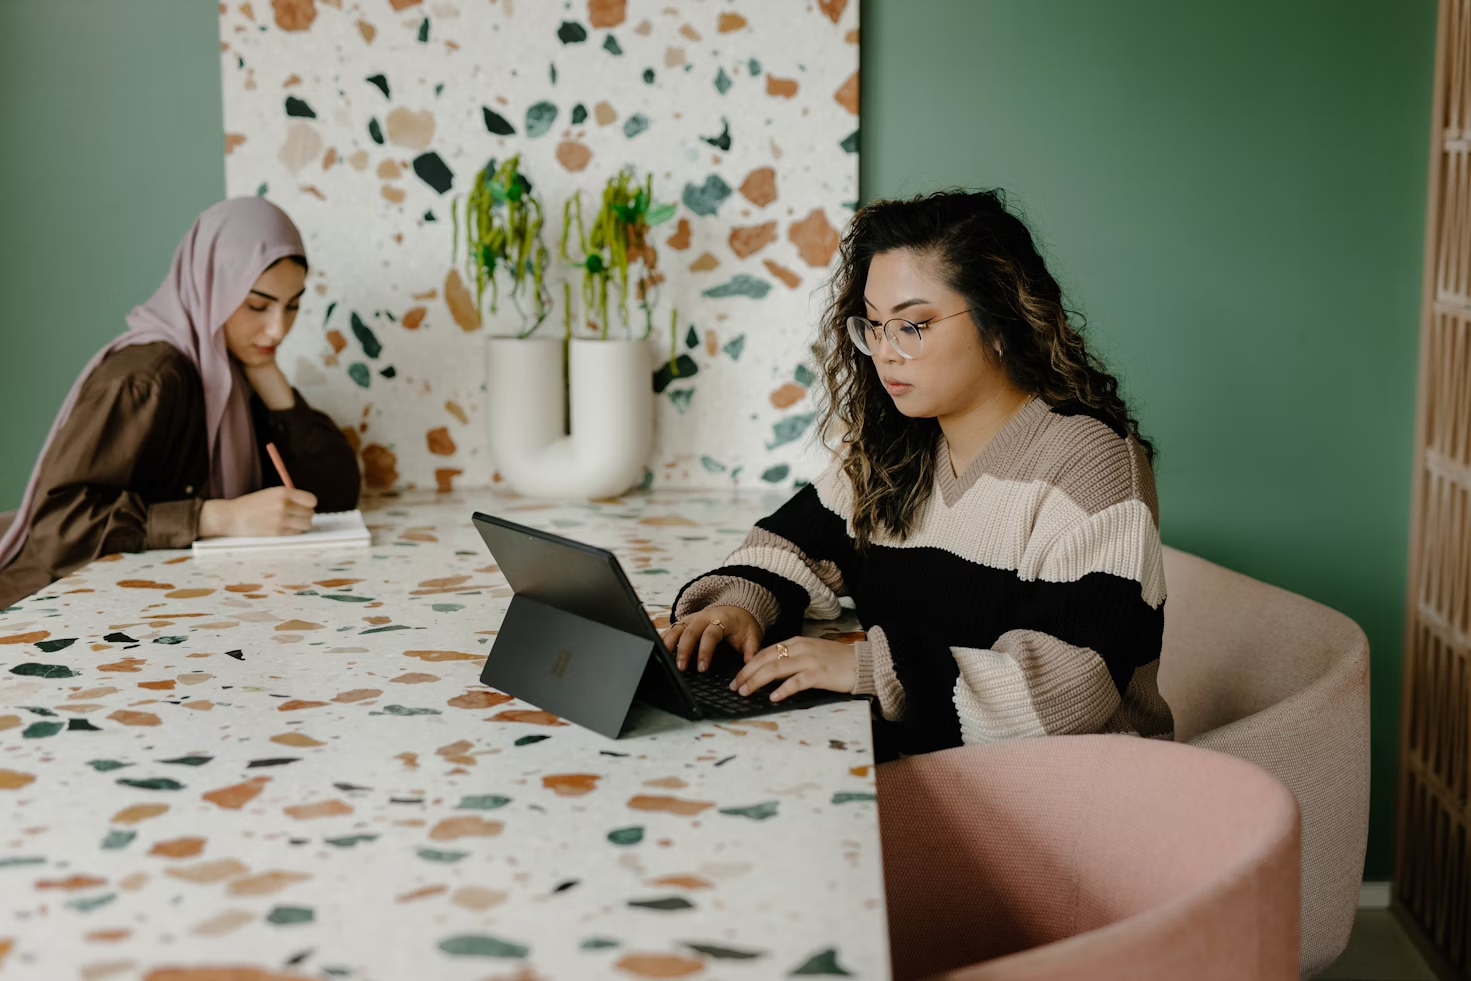 Deux femmes assises à une table, l'une écrivant sur son ordinateur Microsoft tactile et l'autre écrivant dans un carnet